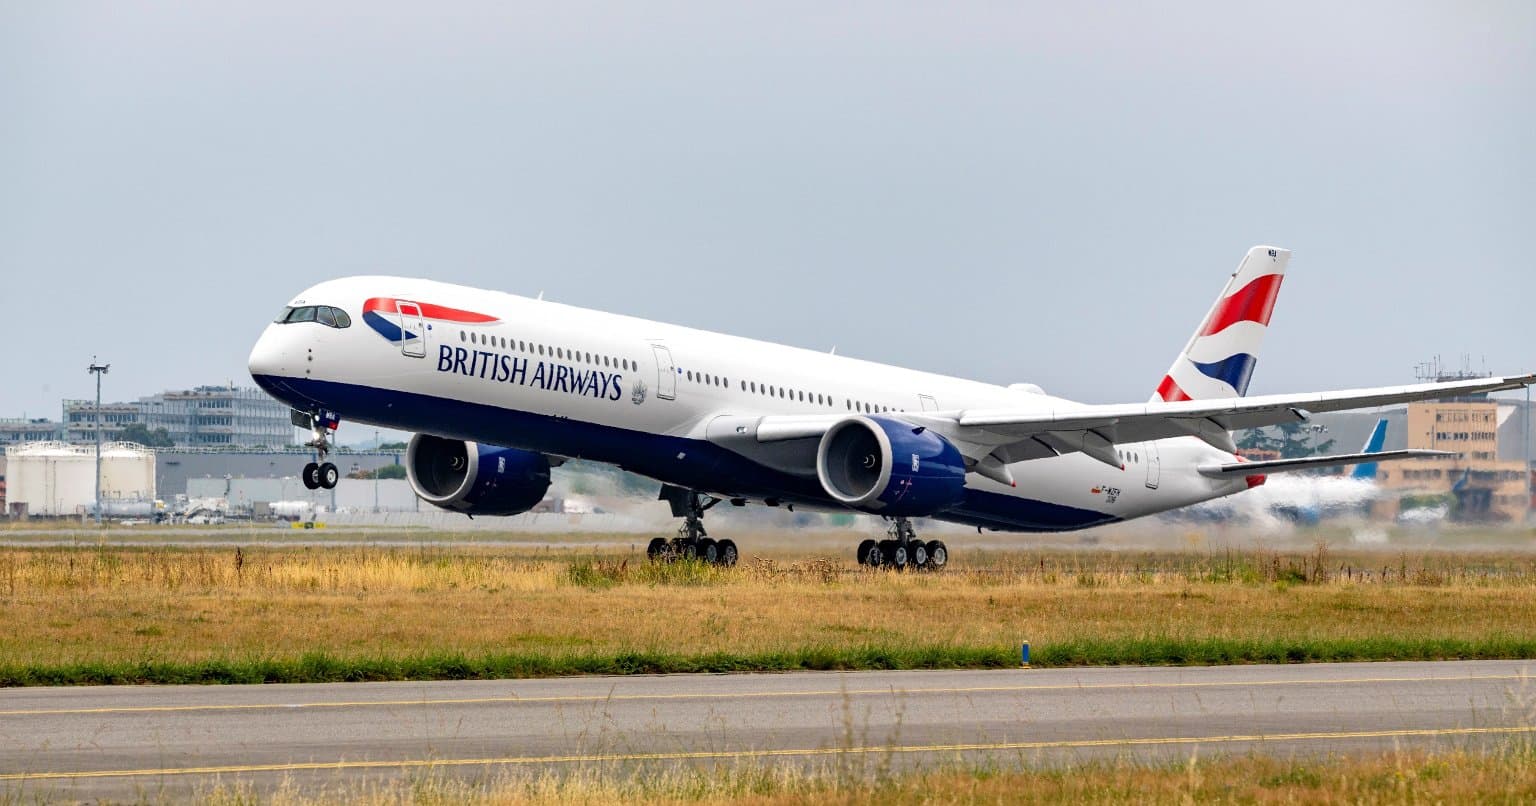 Avion de British Airways sur la piste avec les roues avant décollant